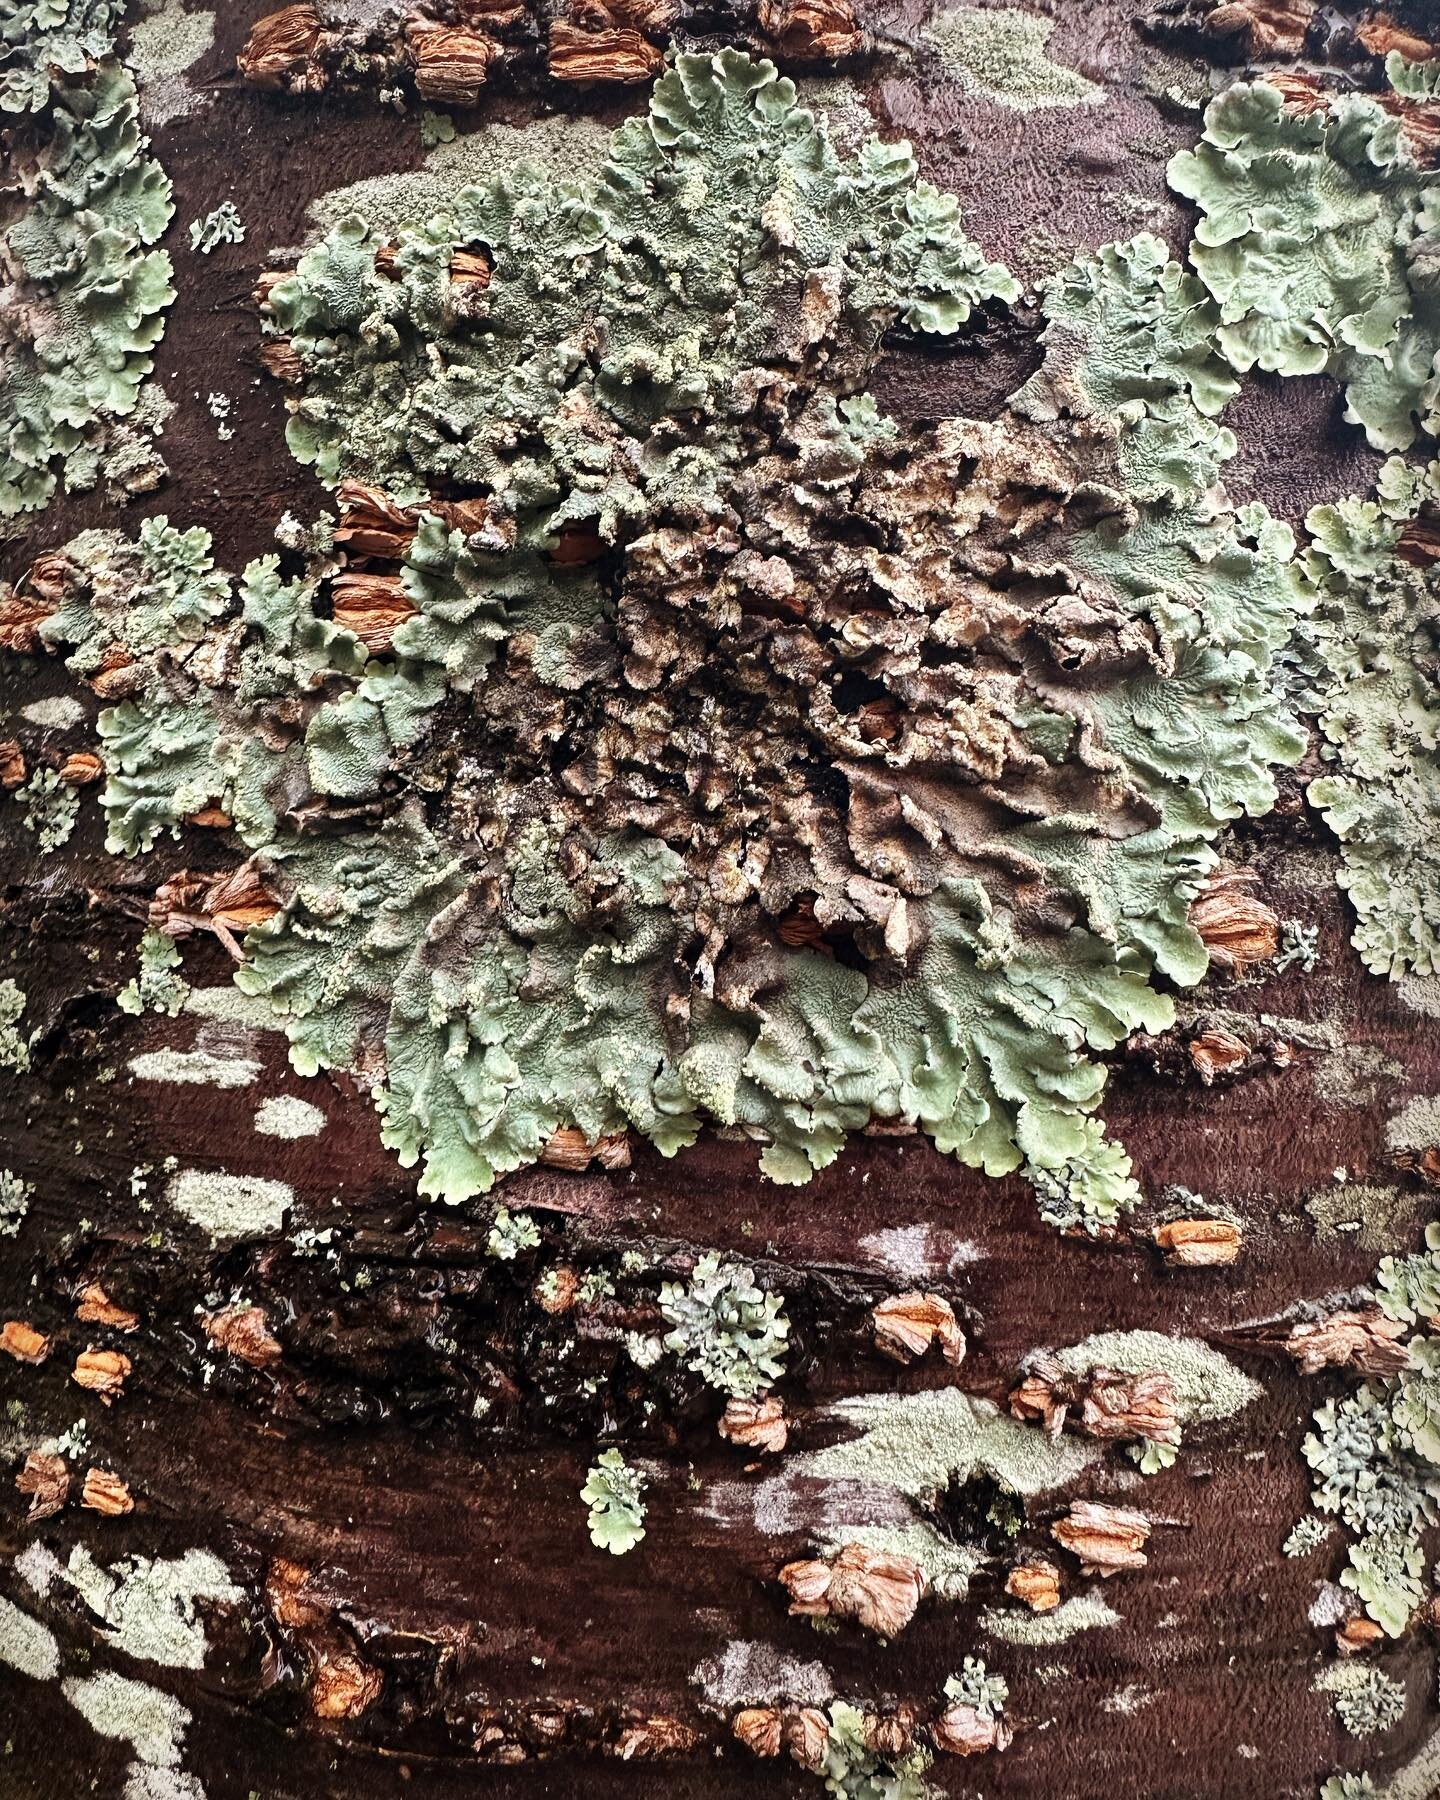 A lichen moment